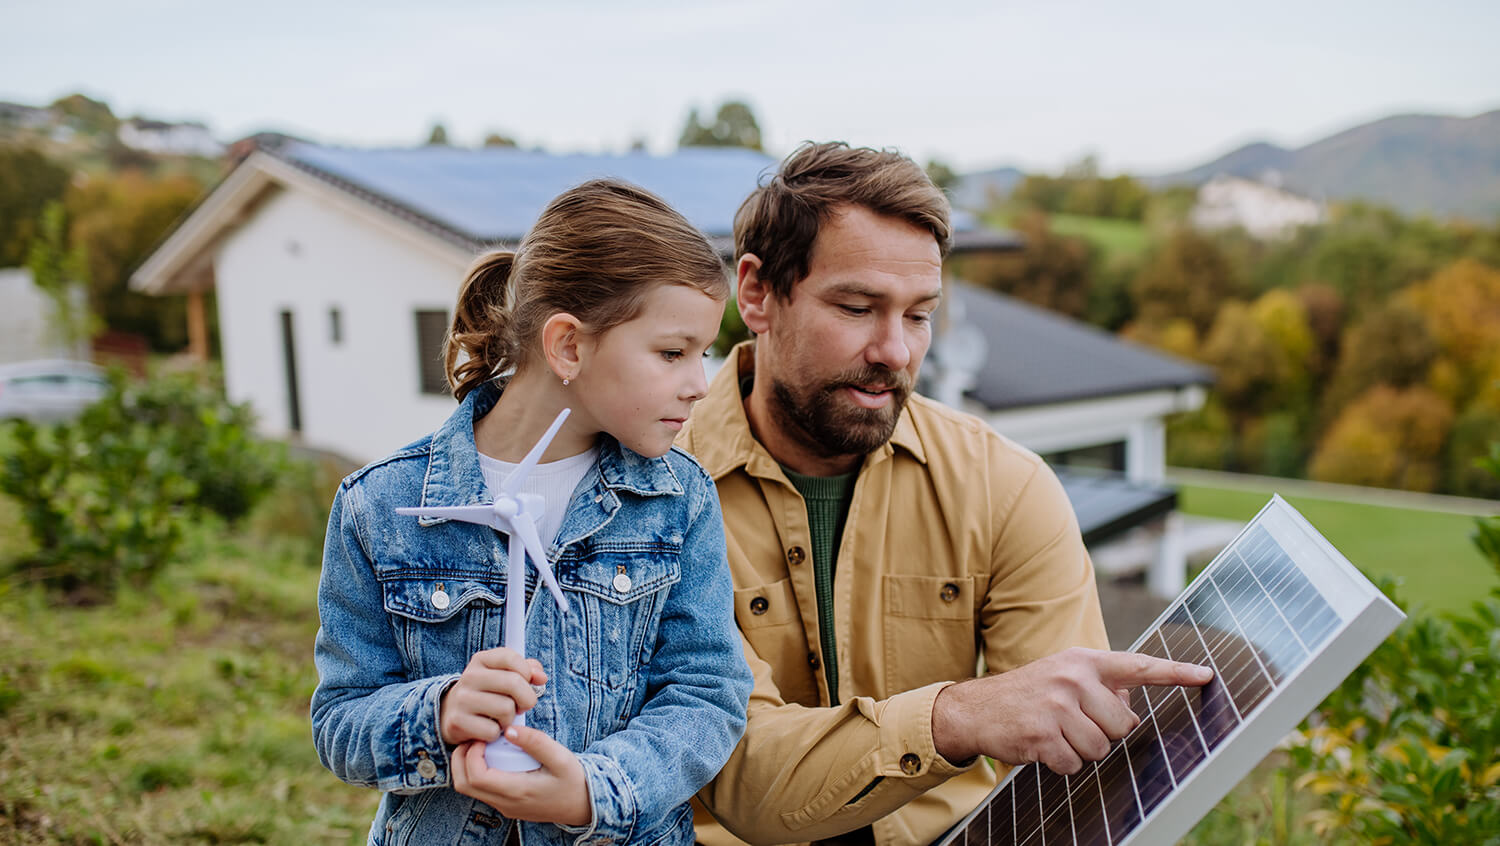 Ein Vater zeigt seiner Tochter eine Photovoltaik-Paneele und erklärt etwas.